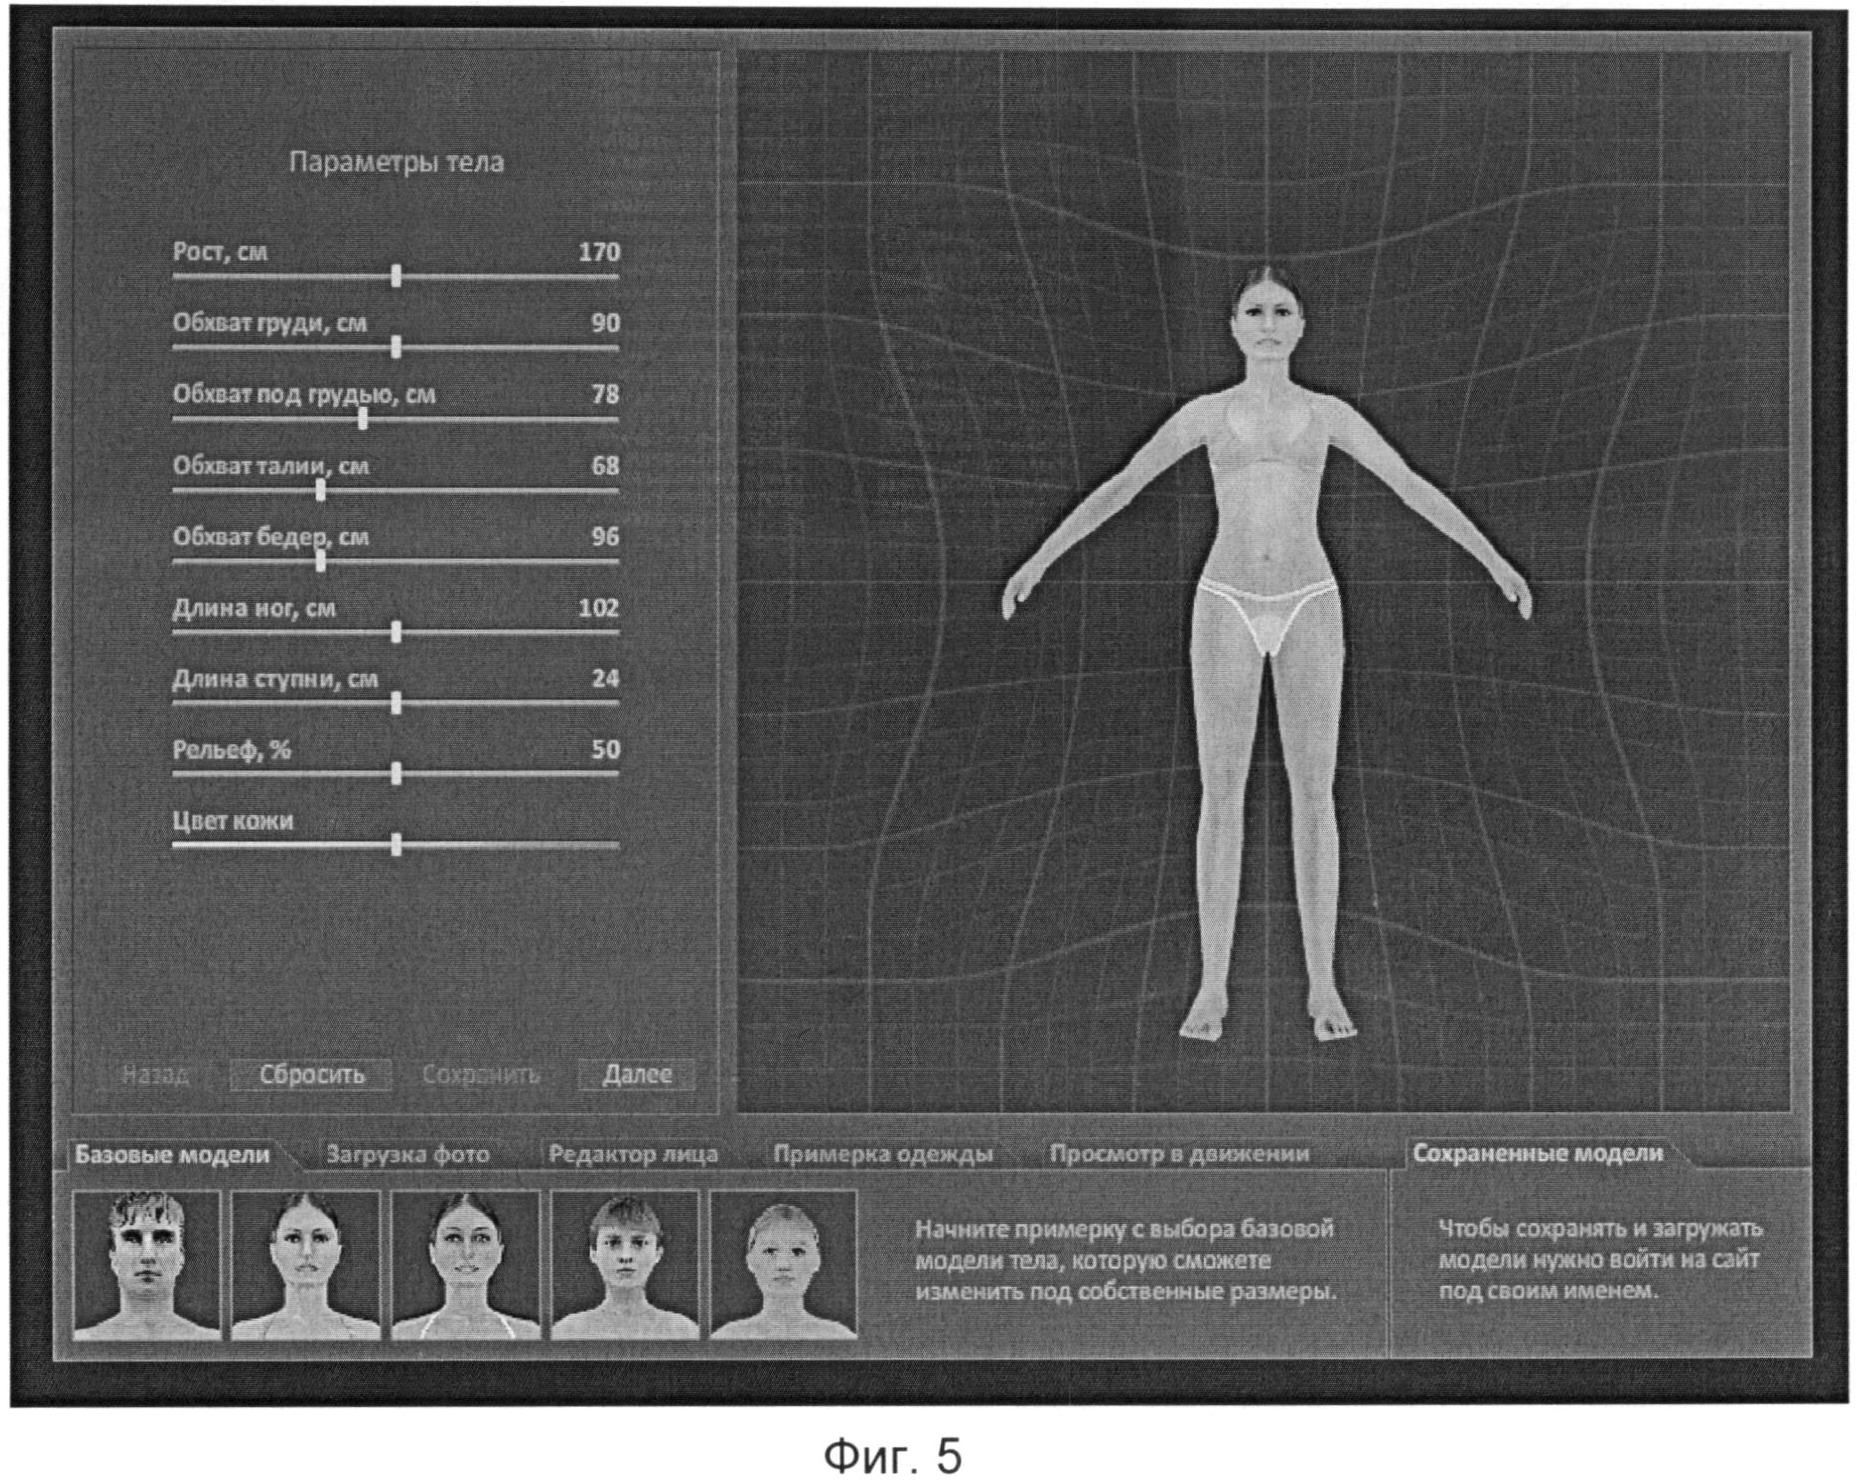 Параметры. Параметры тела. Параметры тела модели. Параметры всего тела. Визуальные параметры тела.